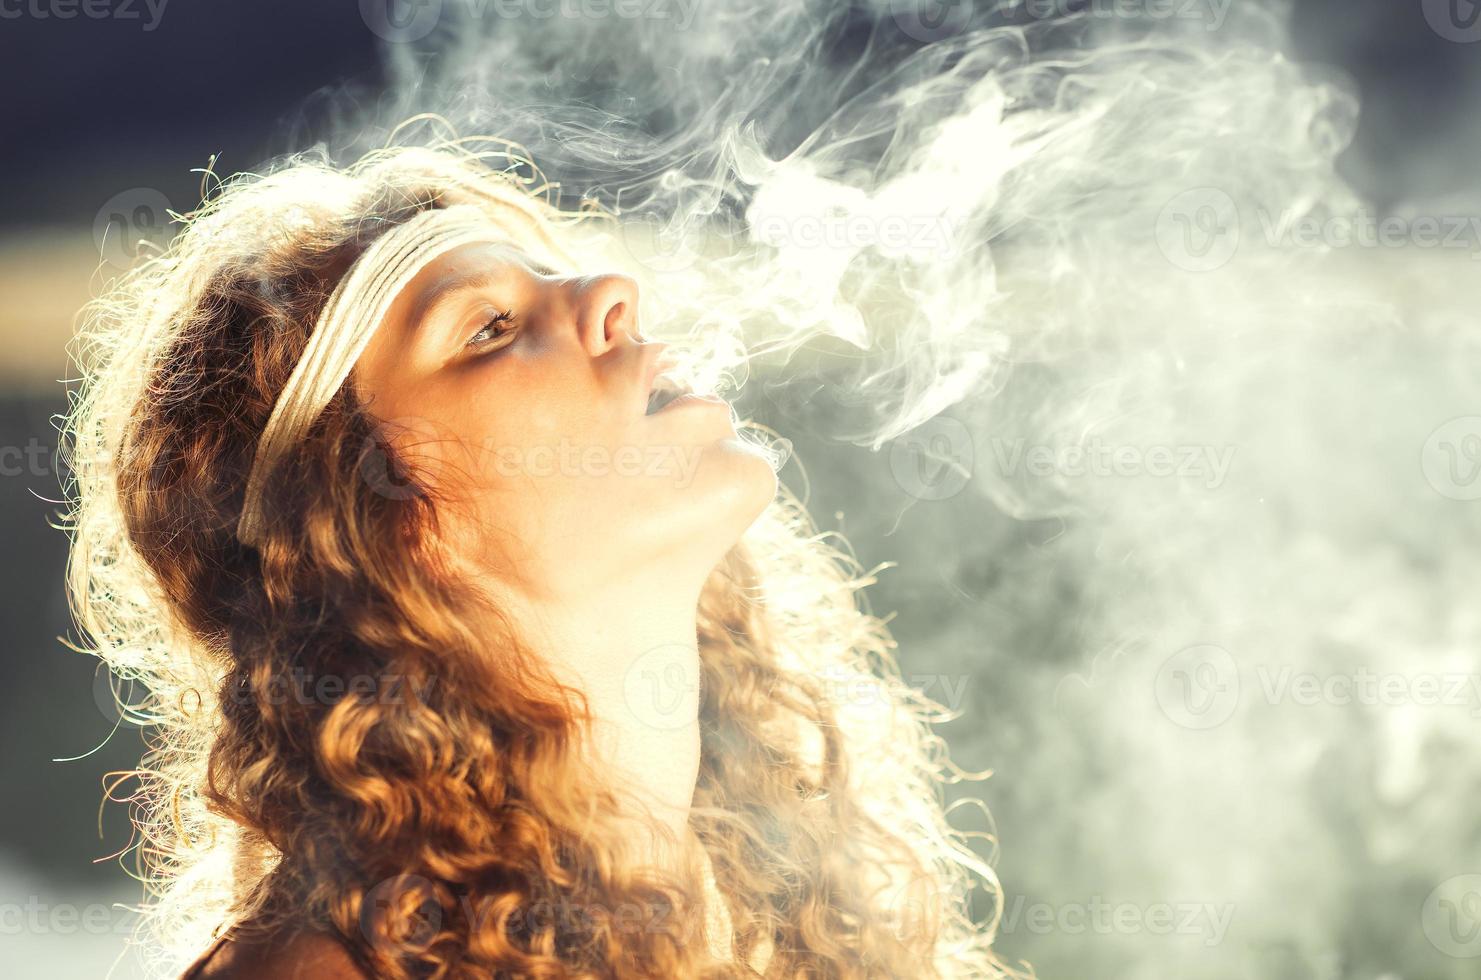 hermosa chica hippie libre soplando humo - foto de efecto vintage